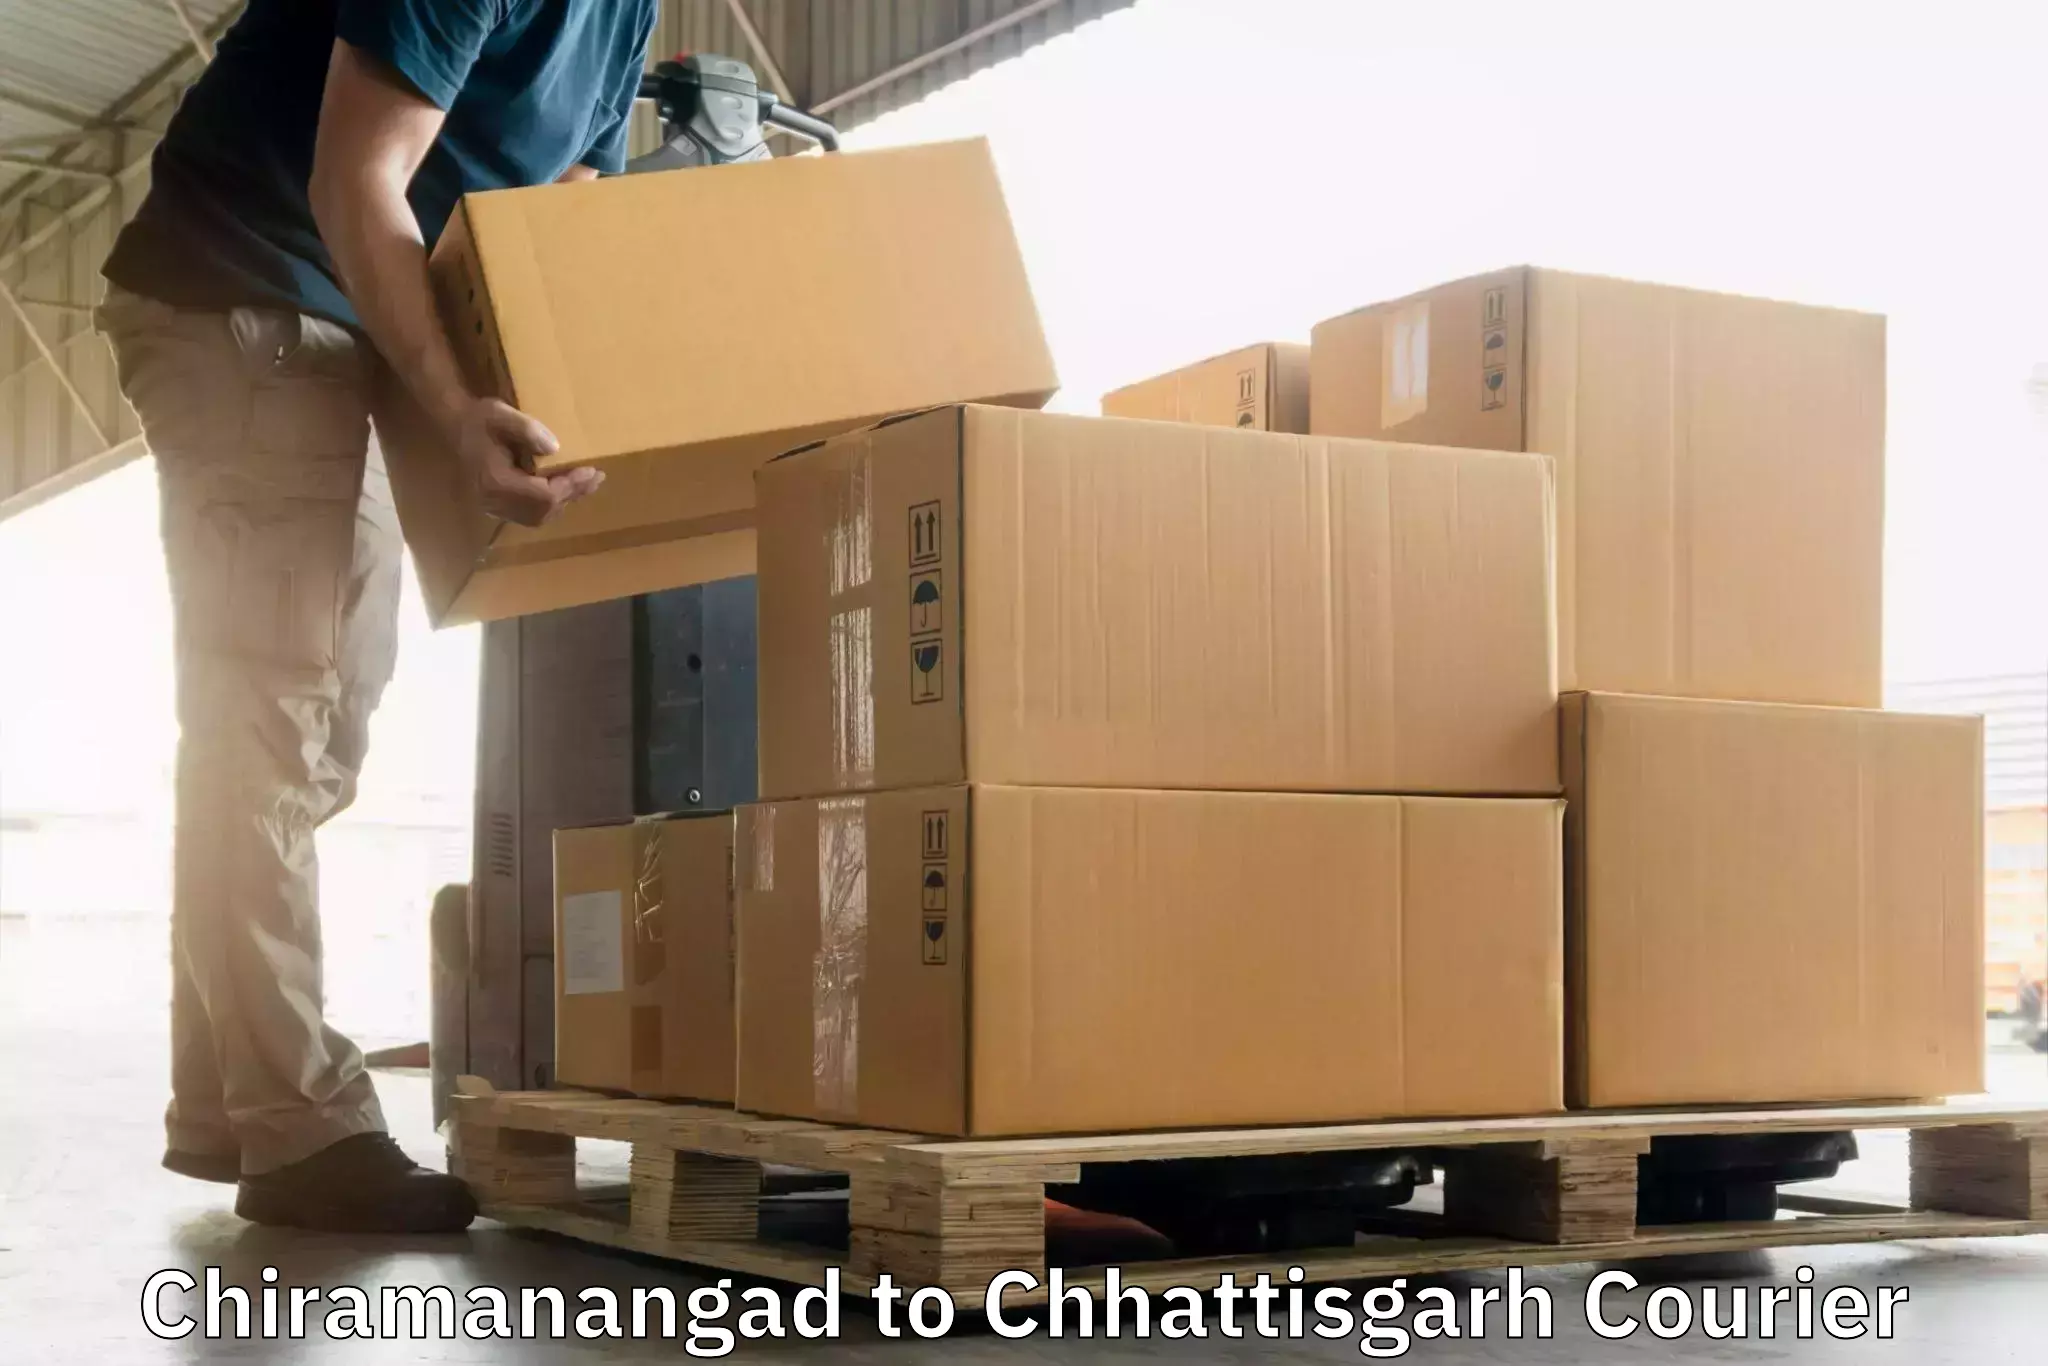 Door-to-door freight service Chiramanangad to Dhamtari